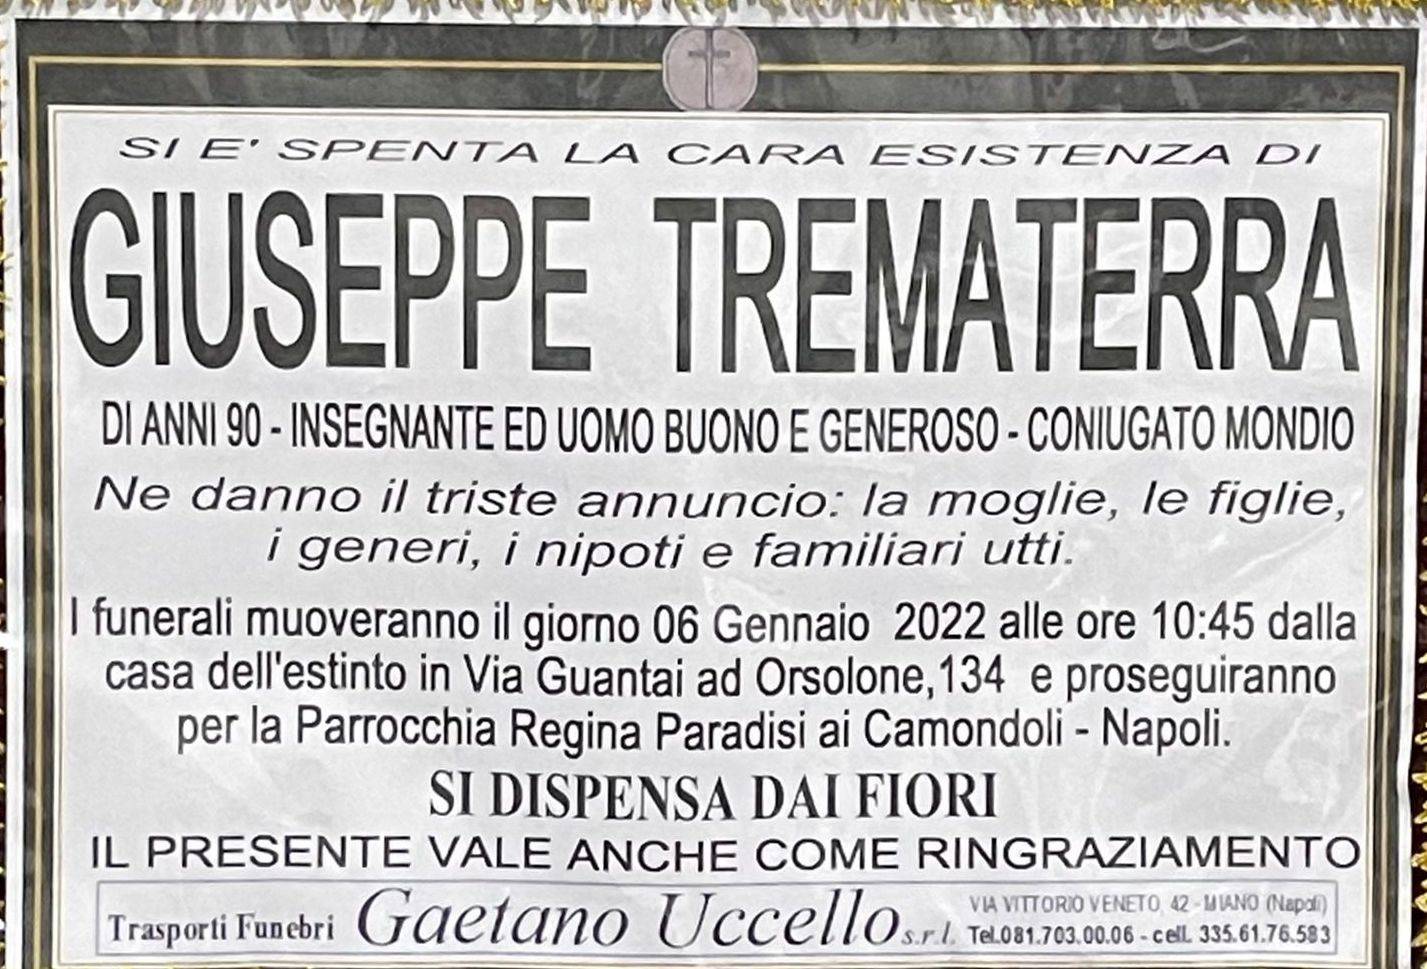 Giuseppe Trematerra